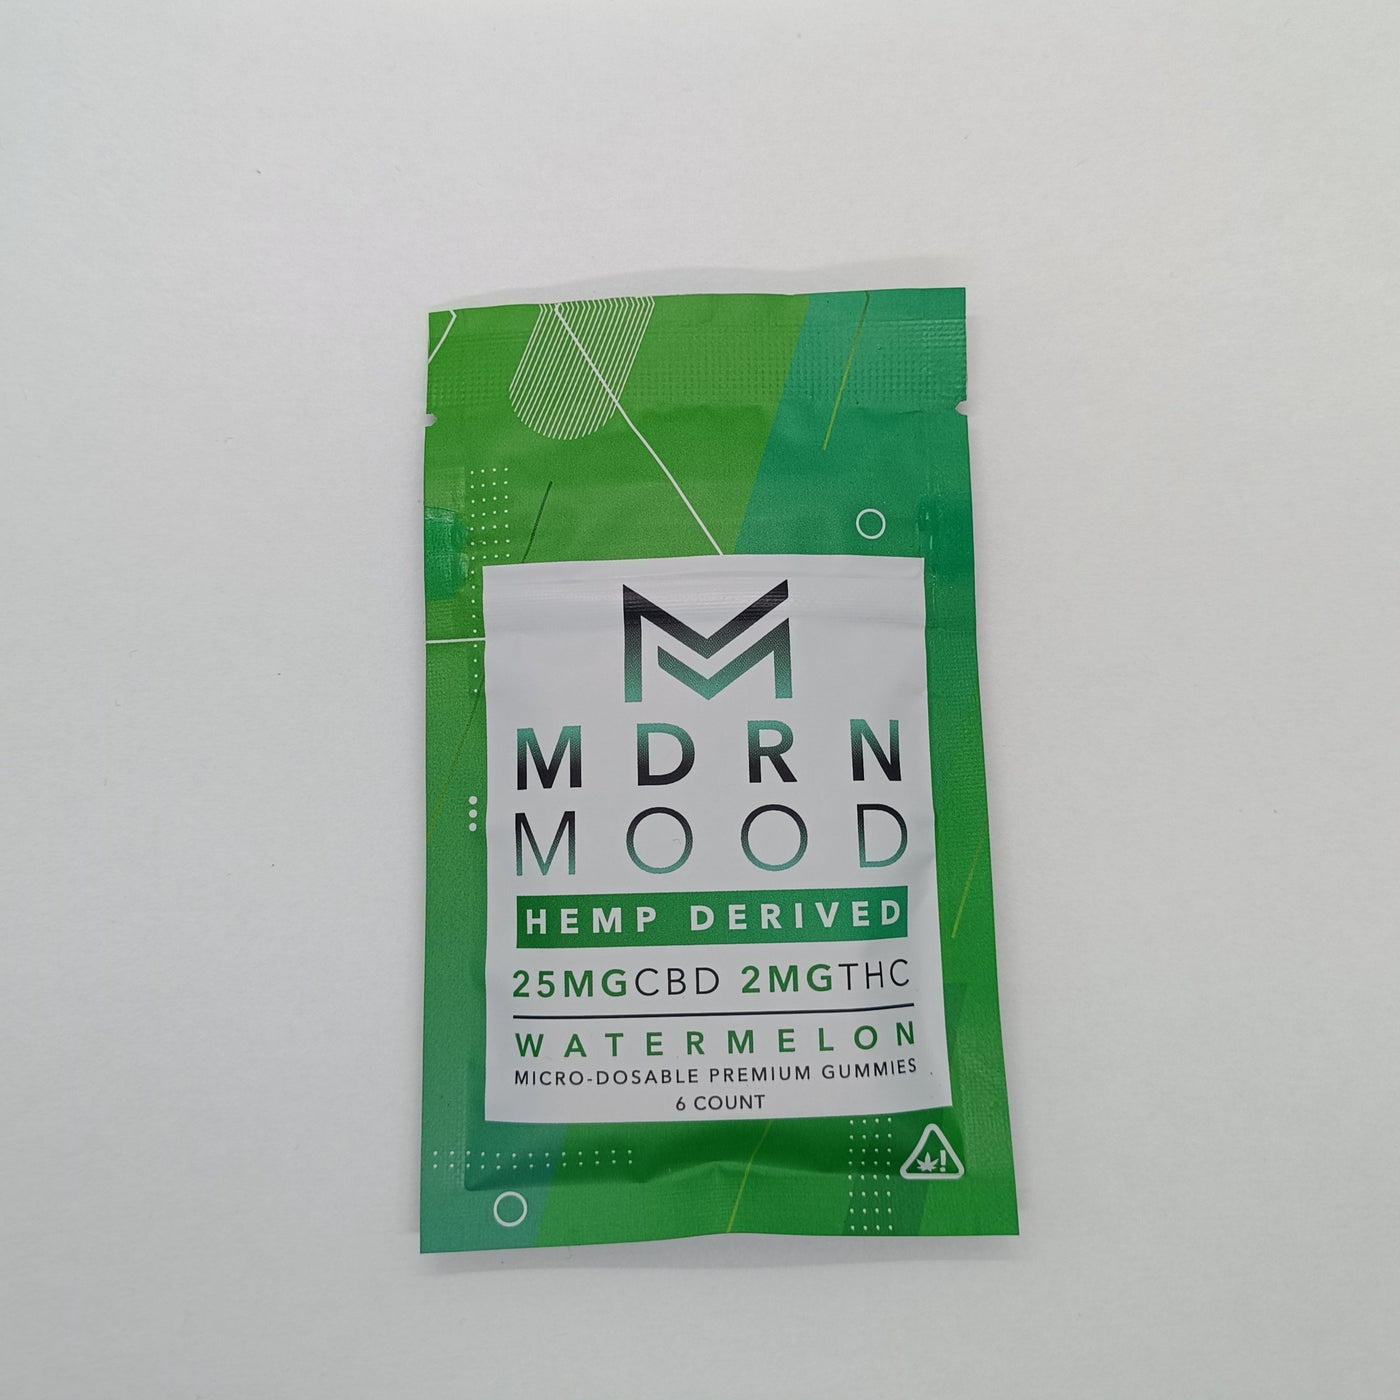 MDRN MOOD - 6 GUMMIES - 25mg CBD/2mg THC - WATERMELON